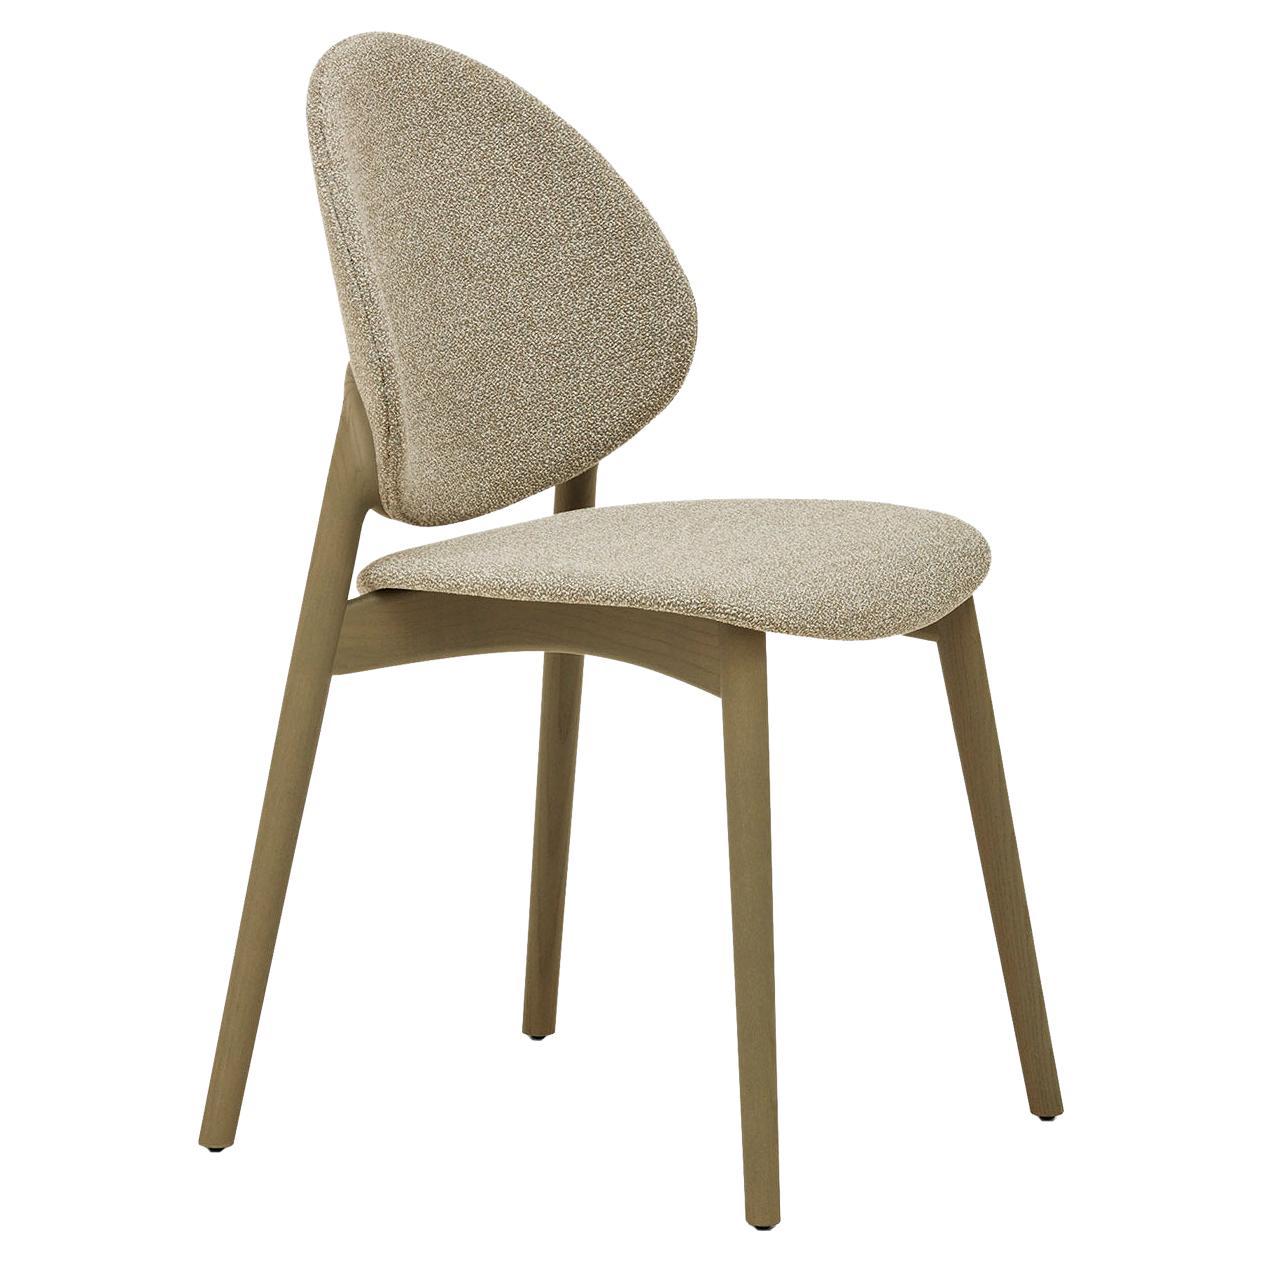 Fleuron 201 Chair For Sale